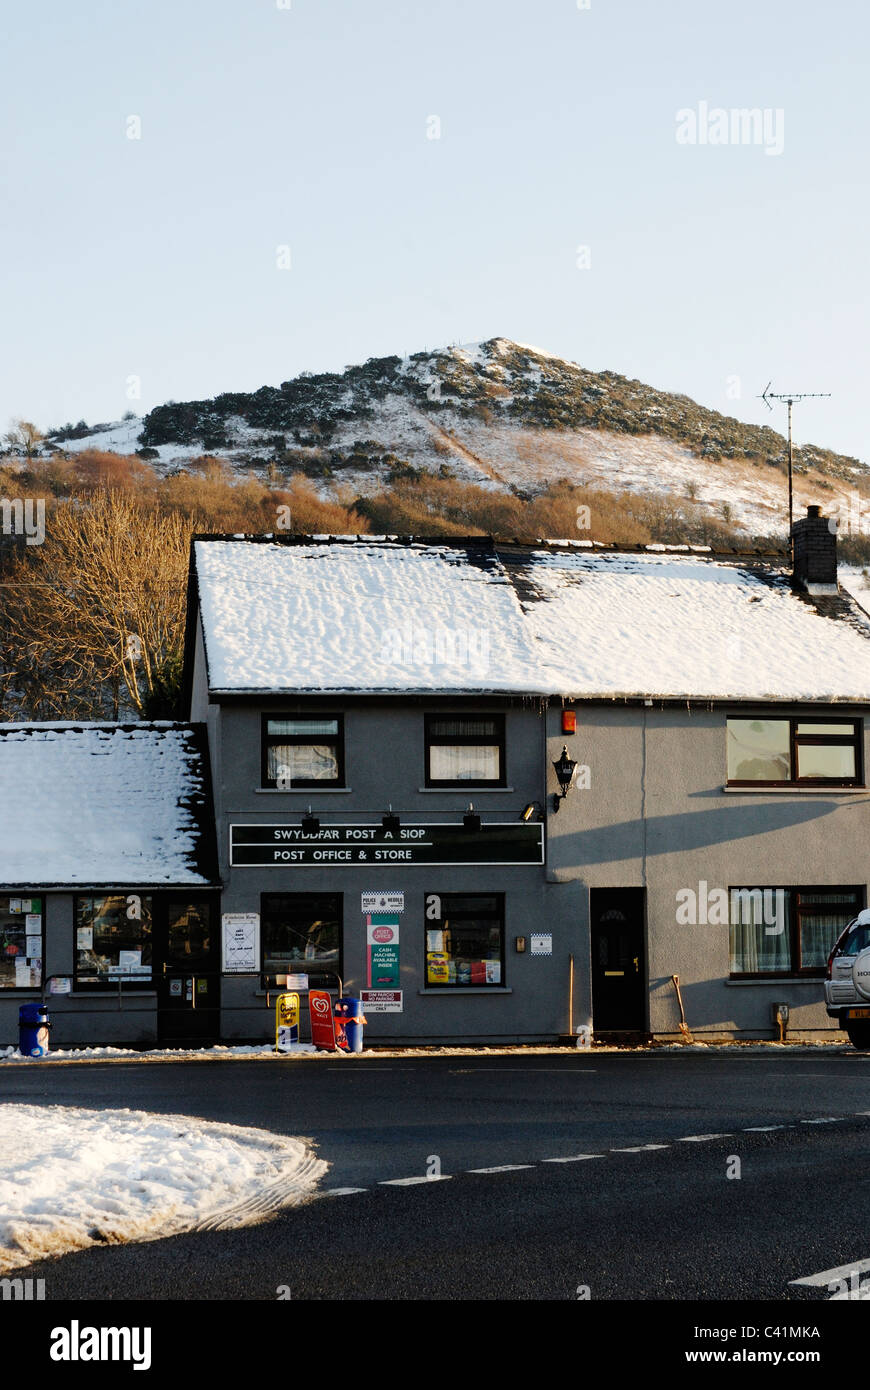 Llanrhystud Bureau de poste et magasin du village dans la neige, au Pays de Galles, hiver 2010-11. Banque D'Images